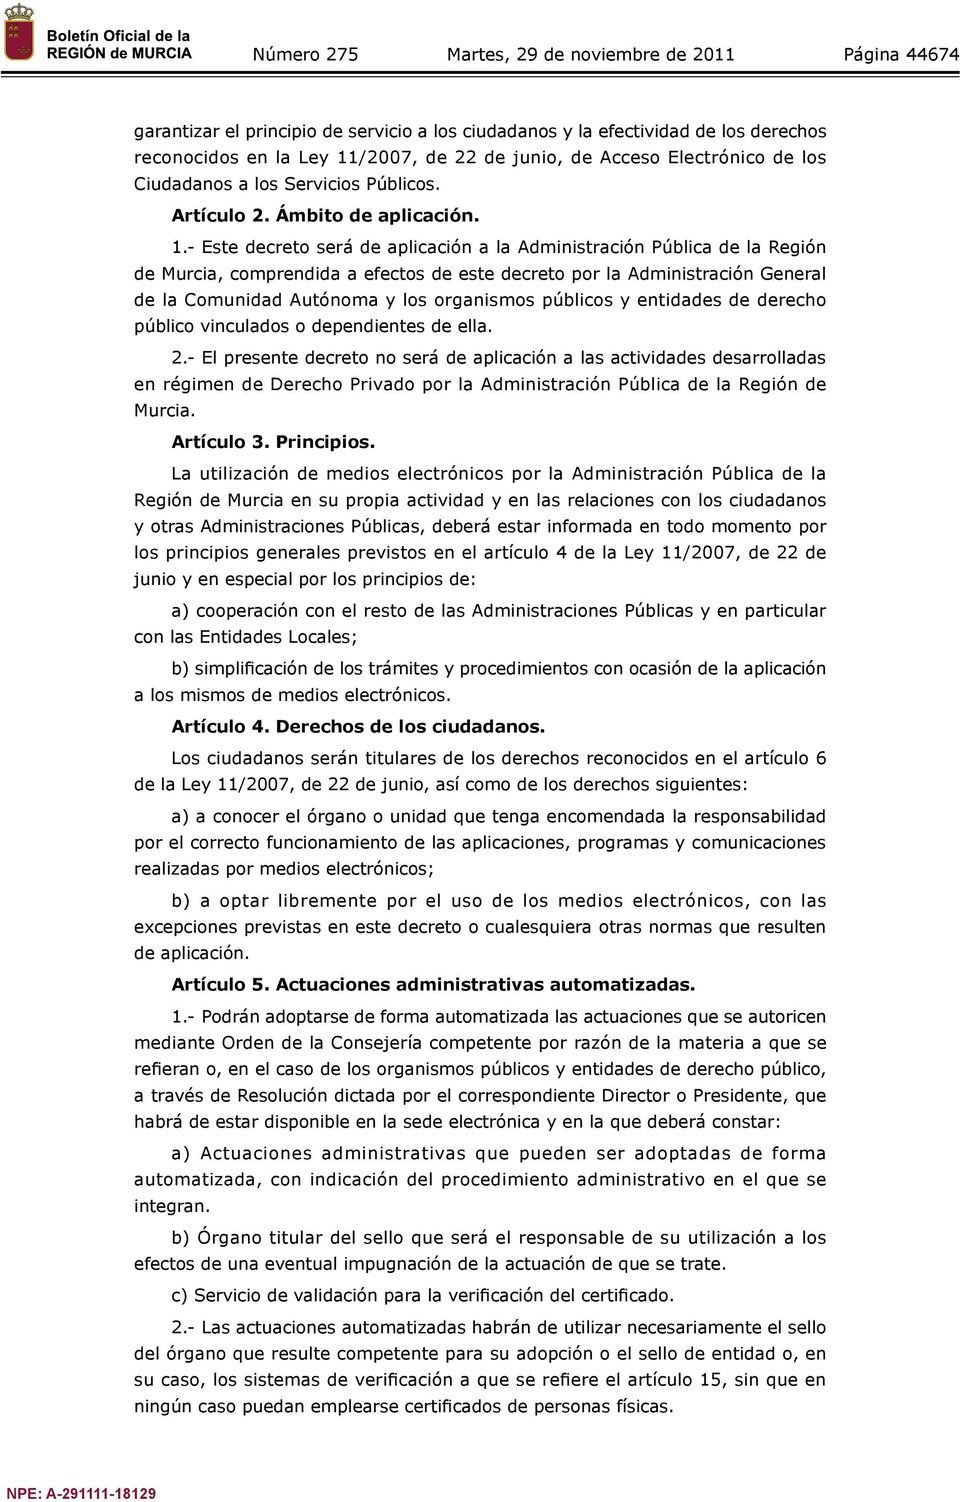 - Este decreto será de aplicación a la Administración Pública de la Región de Murcia, comprendida a efectos de este decreto por la Administración General de la Comunidad Autónoma y los organismos